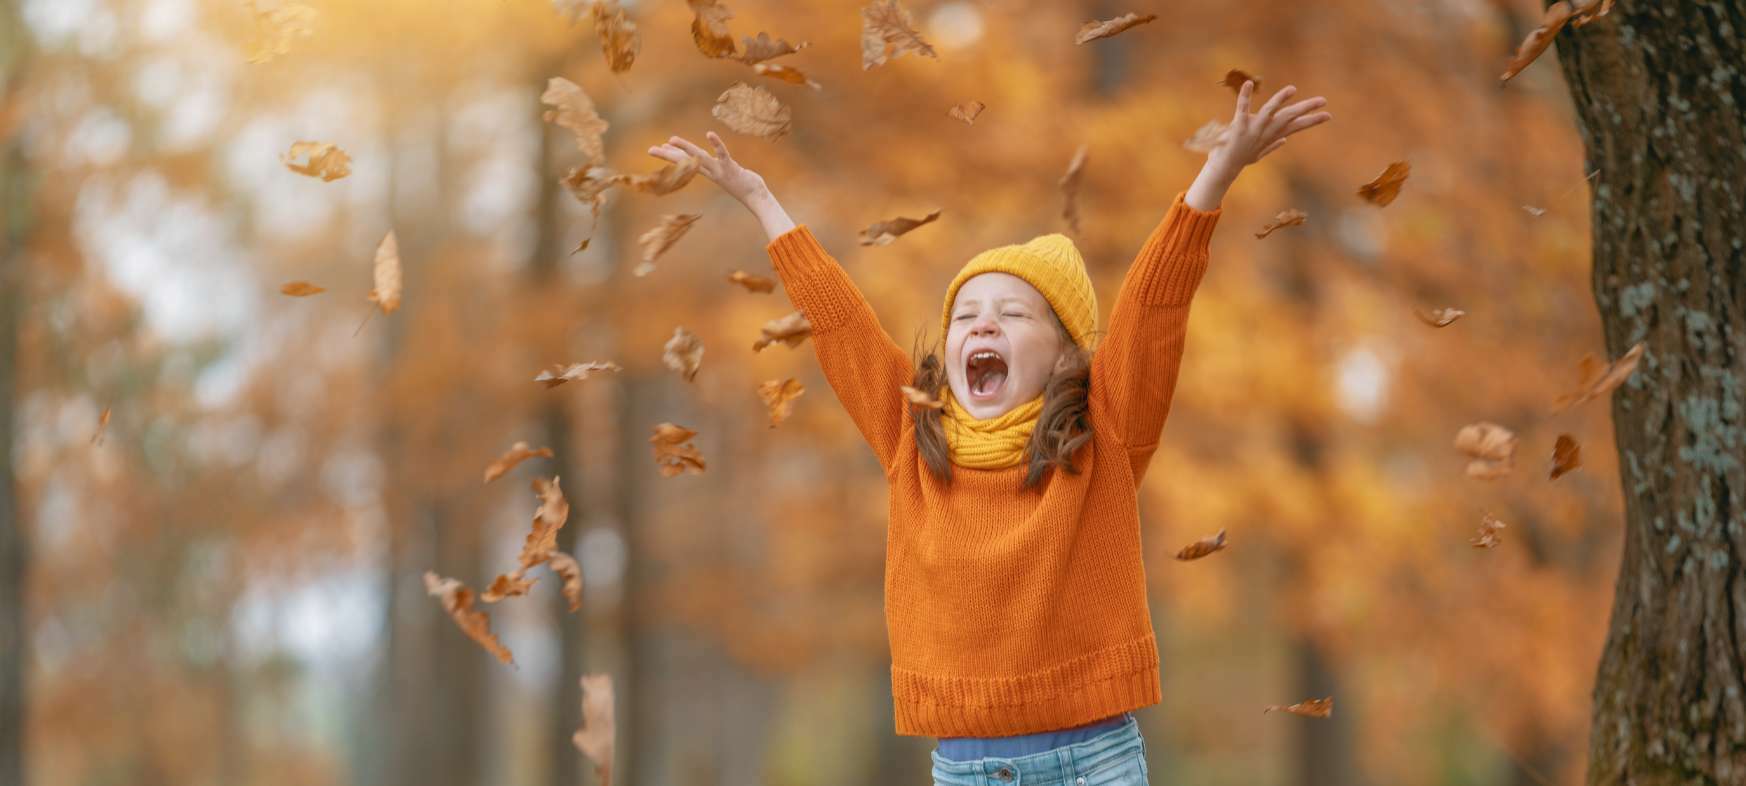 Kind spielt im Laub bei Herbstwetter